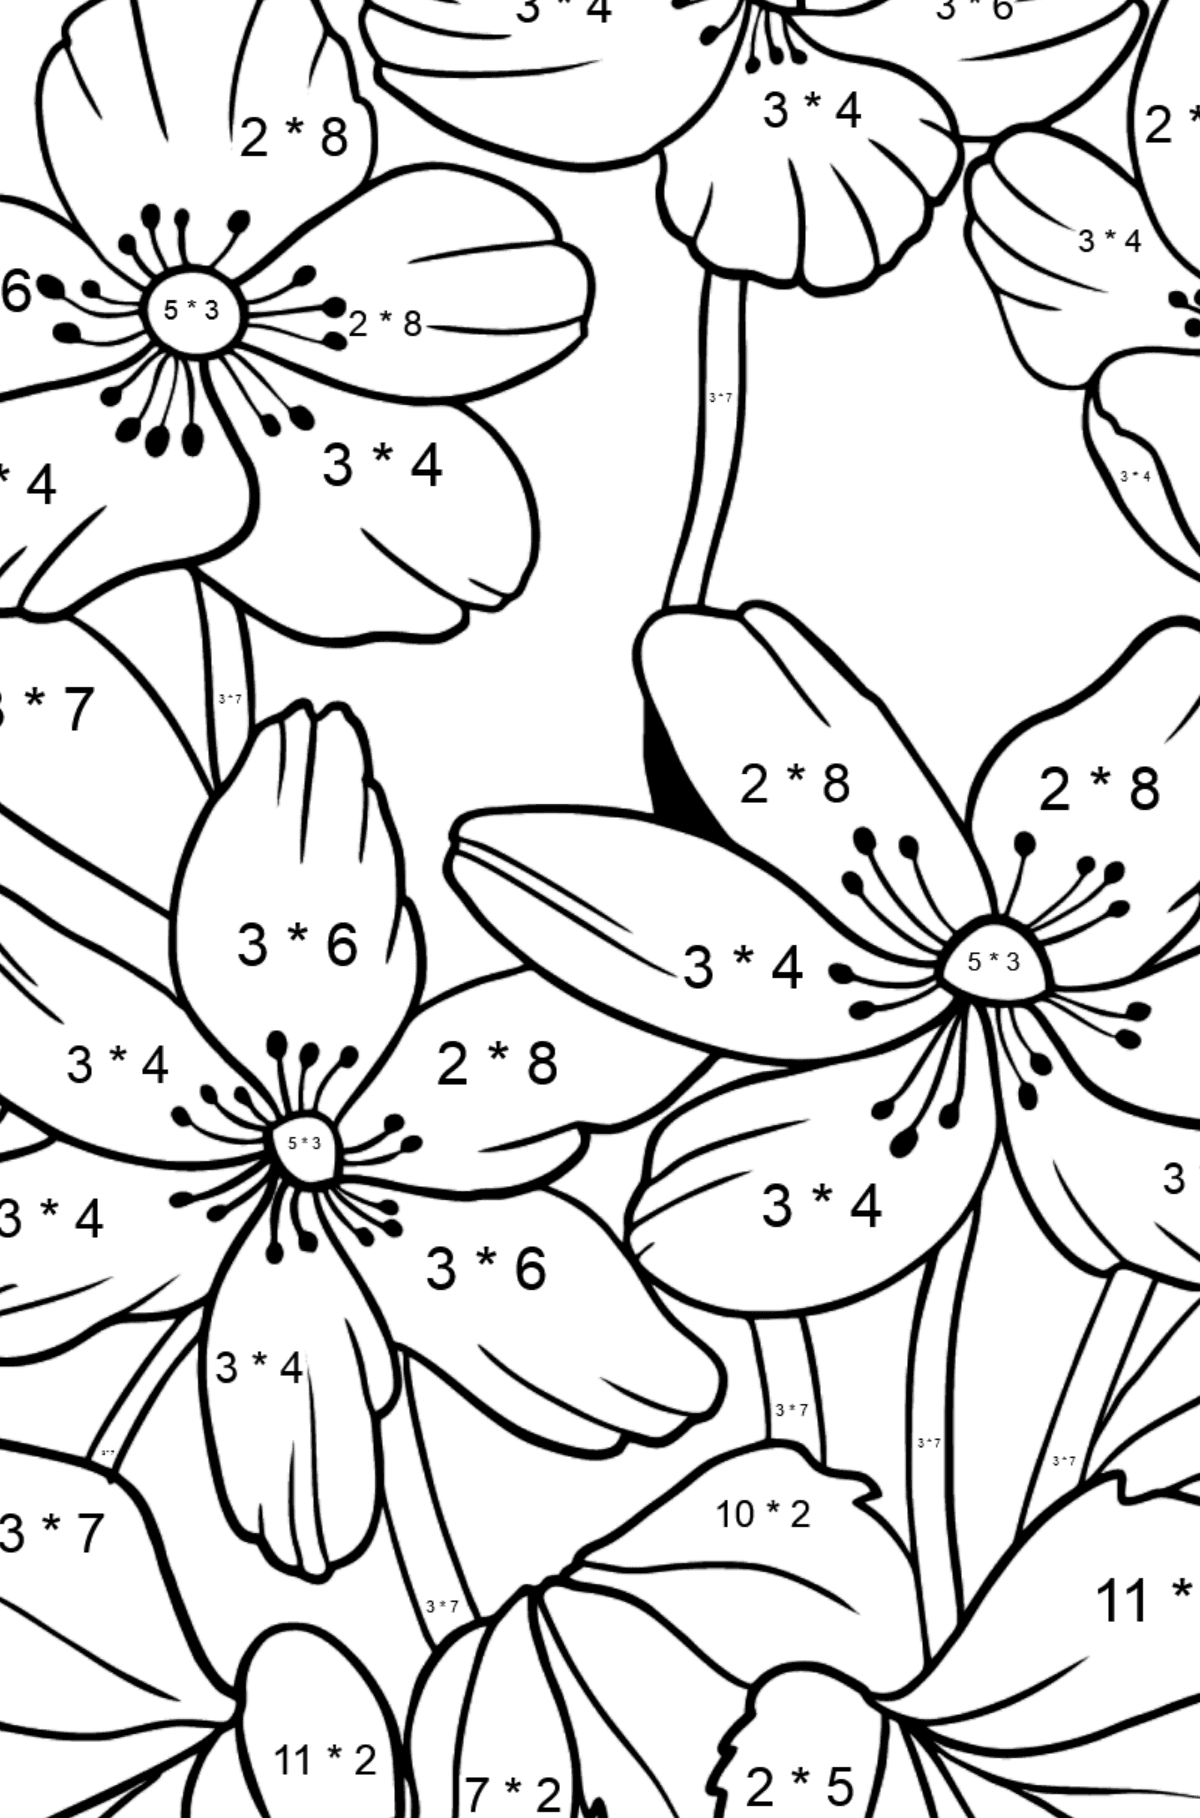 Omalovánka květiny Sasanka (složitě) - Matematická Omalovánka - Násobení pro děti